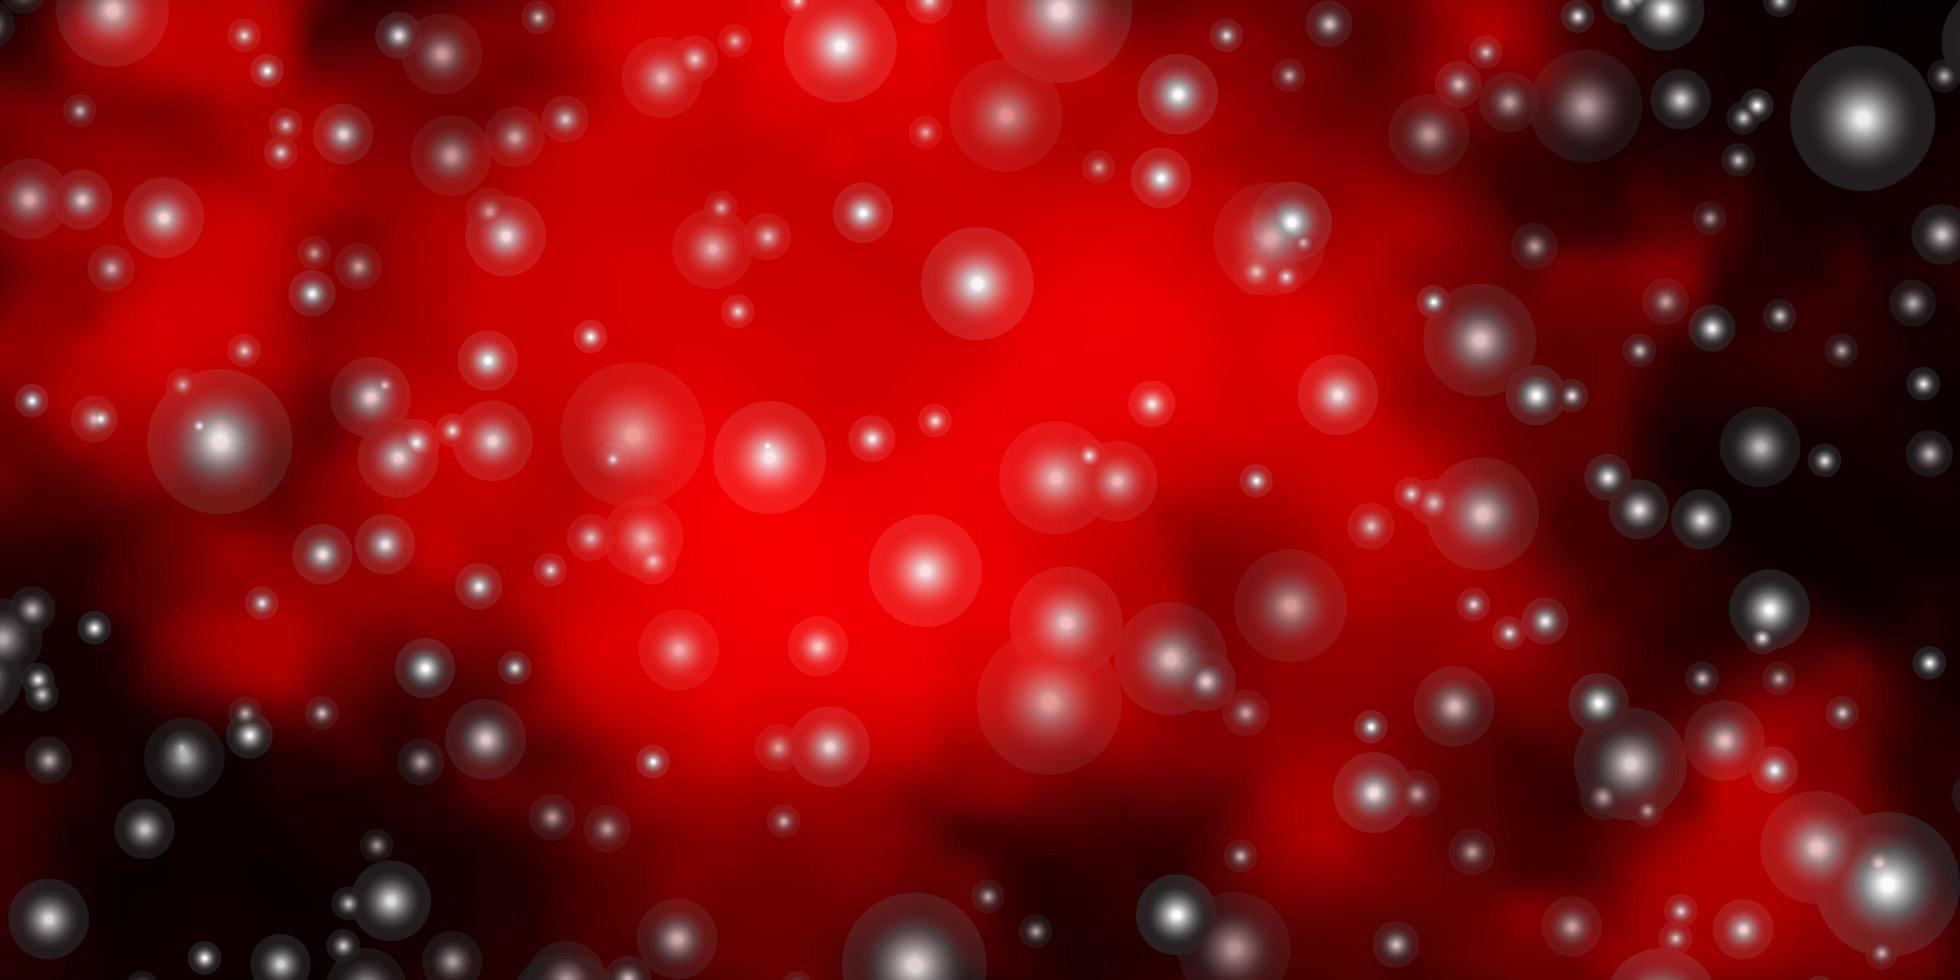 fundo vector vermelho escuro com estrelas coloridas. brilhando ilustração colorida com estrelas pequenas e grandes. tema para telefones celulares.